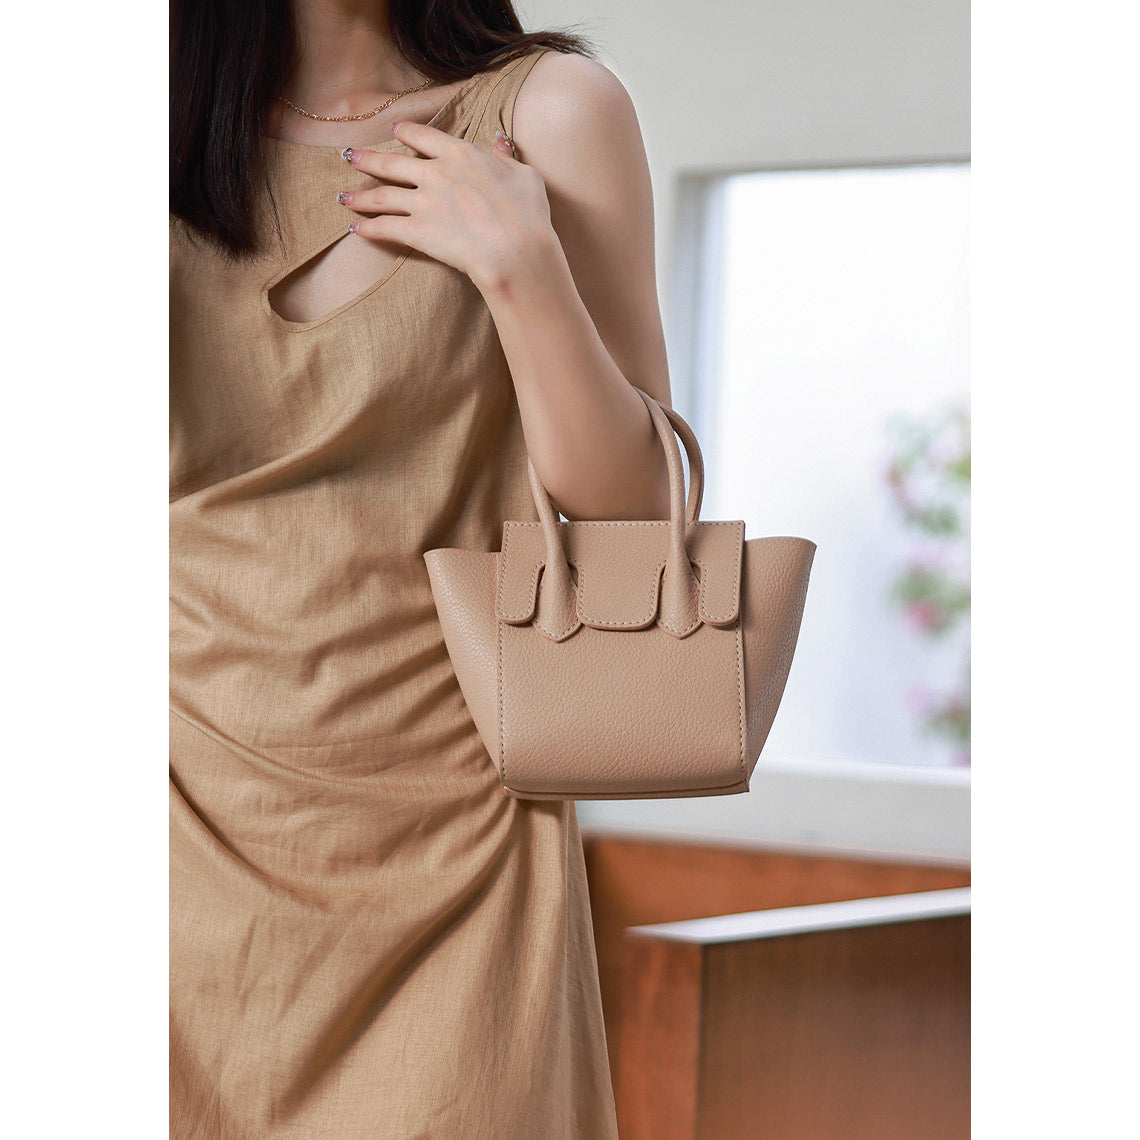 DIY Design Bag Kits Beige | Leather Handbag Kits to Make at Home